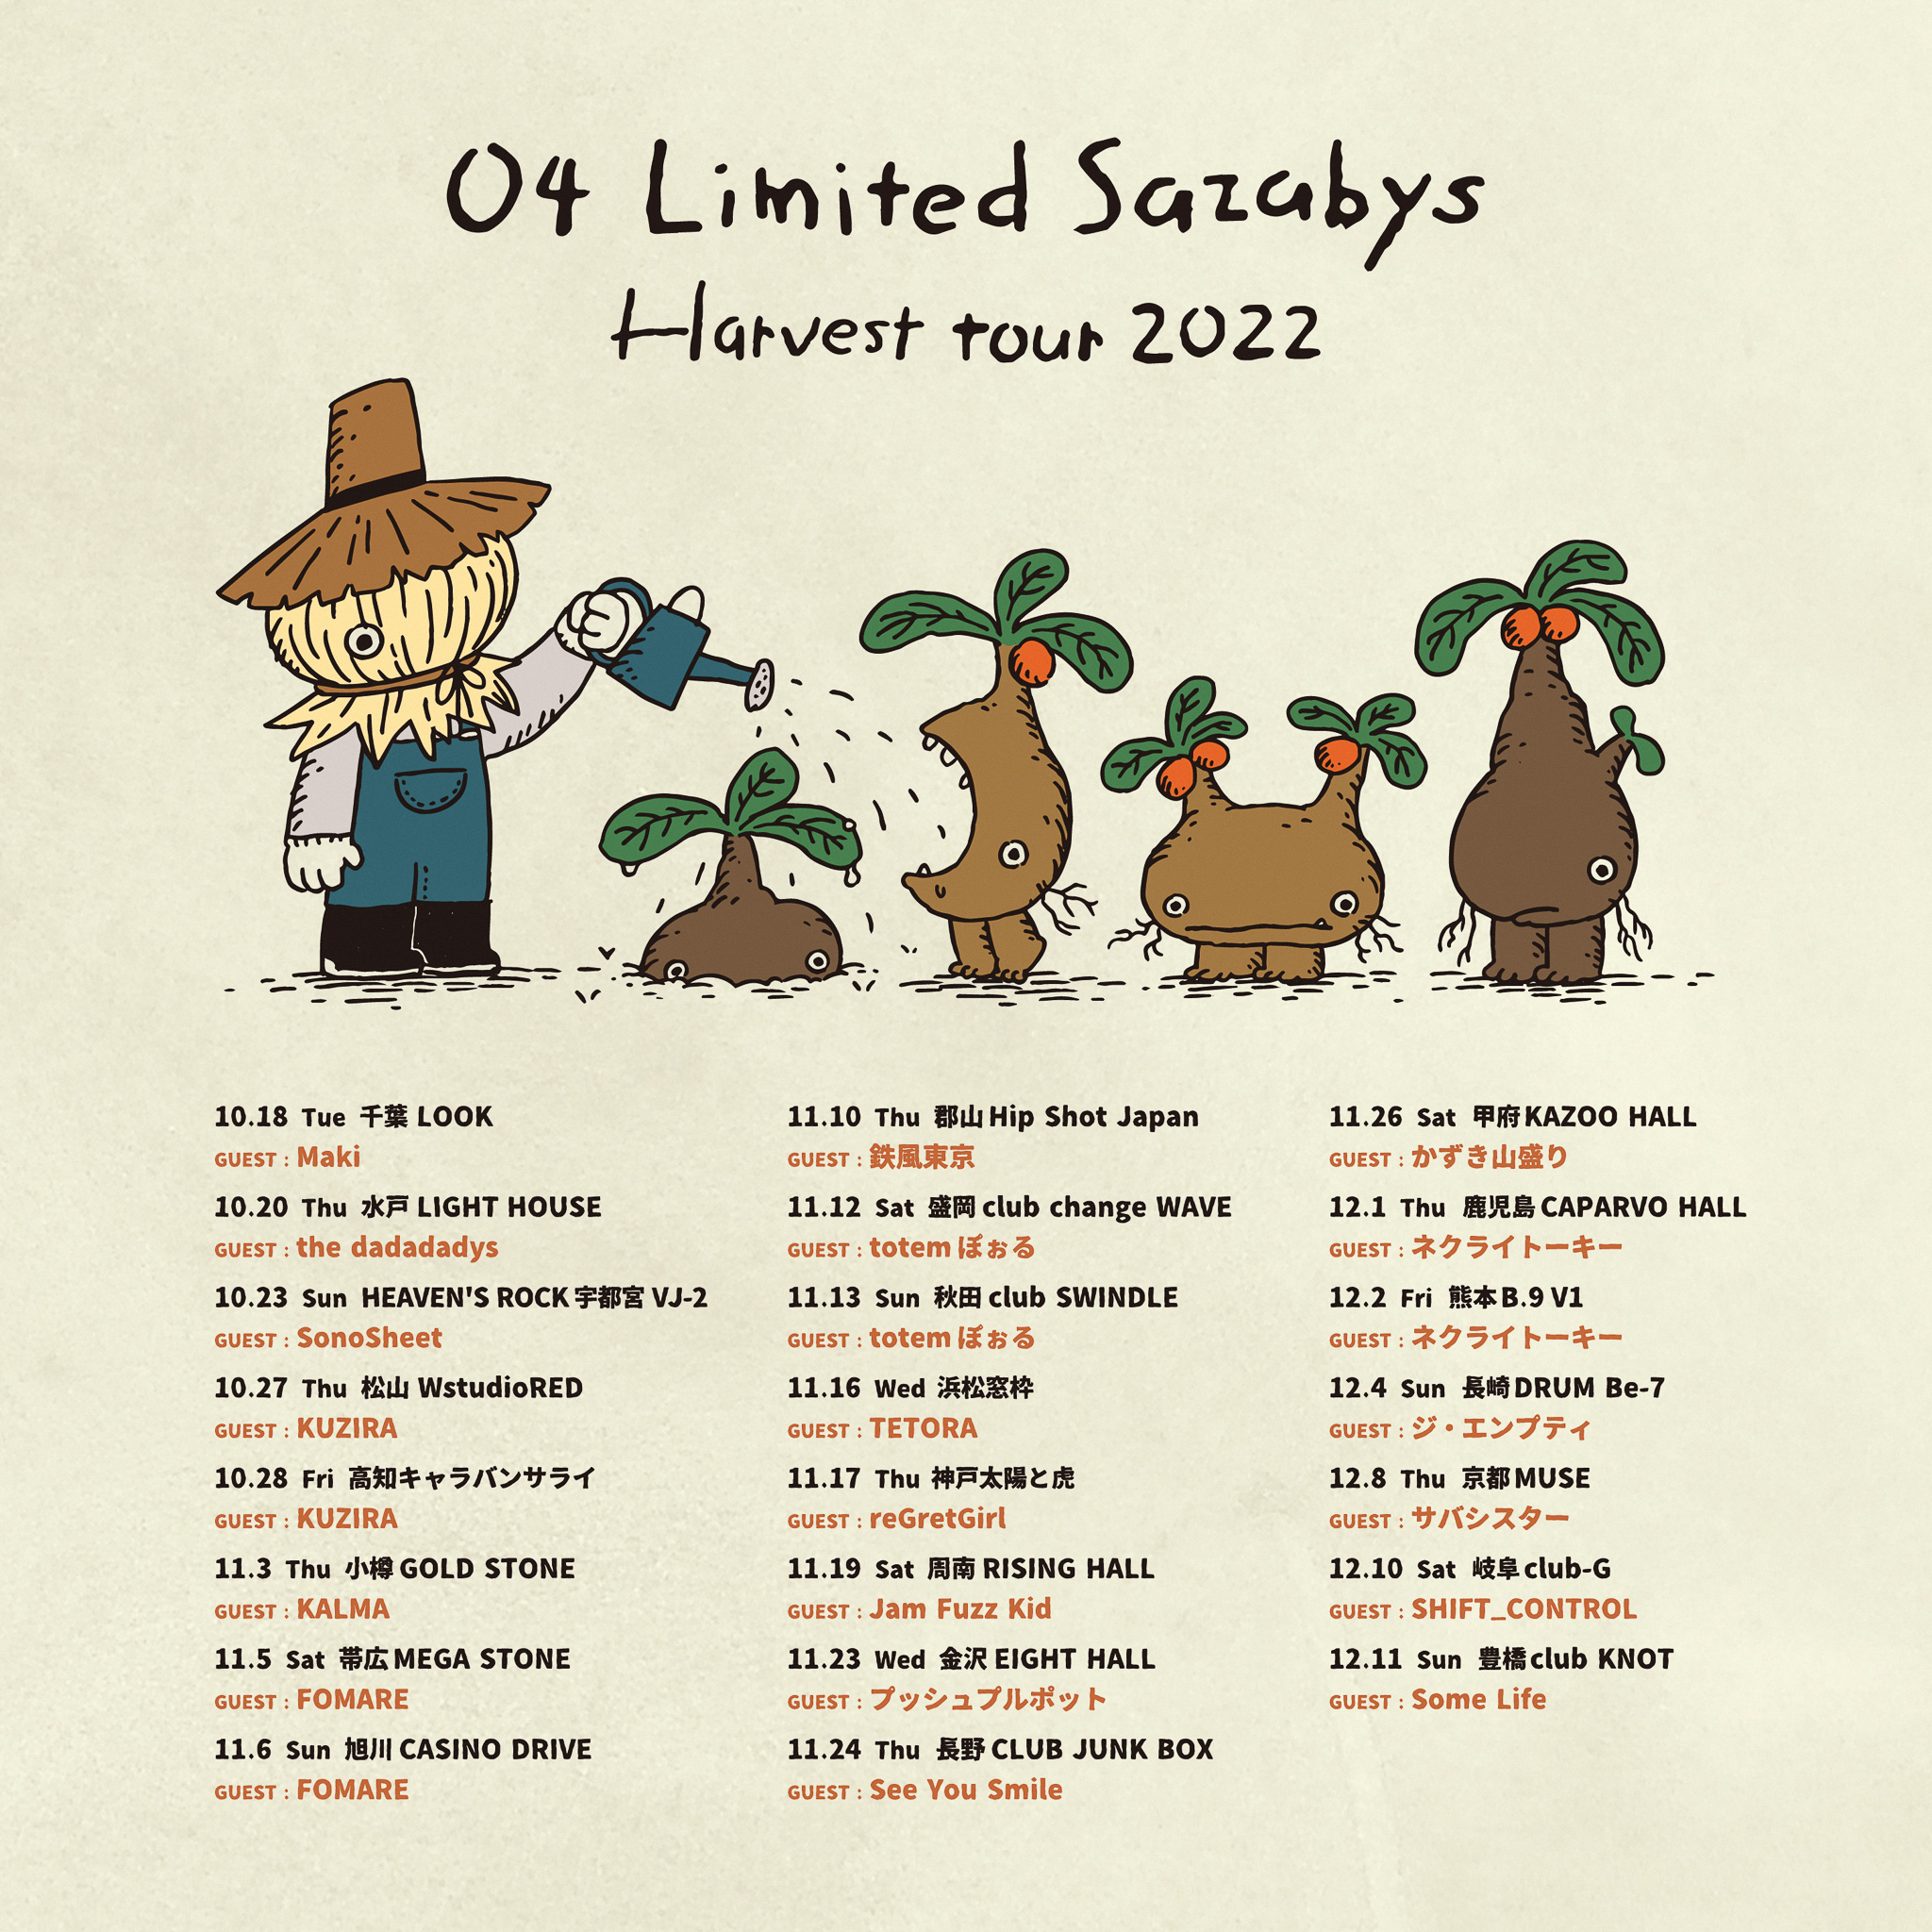 【山口】04 Limited Sazabys "Harvest tour 2022" (周南RISING HALL)